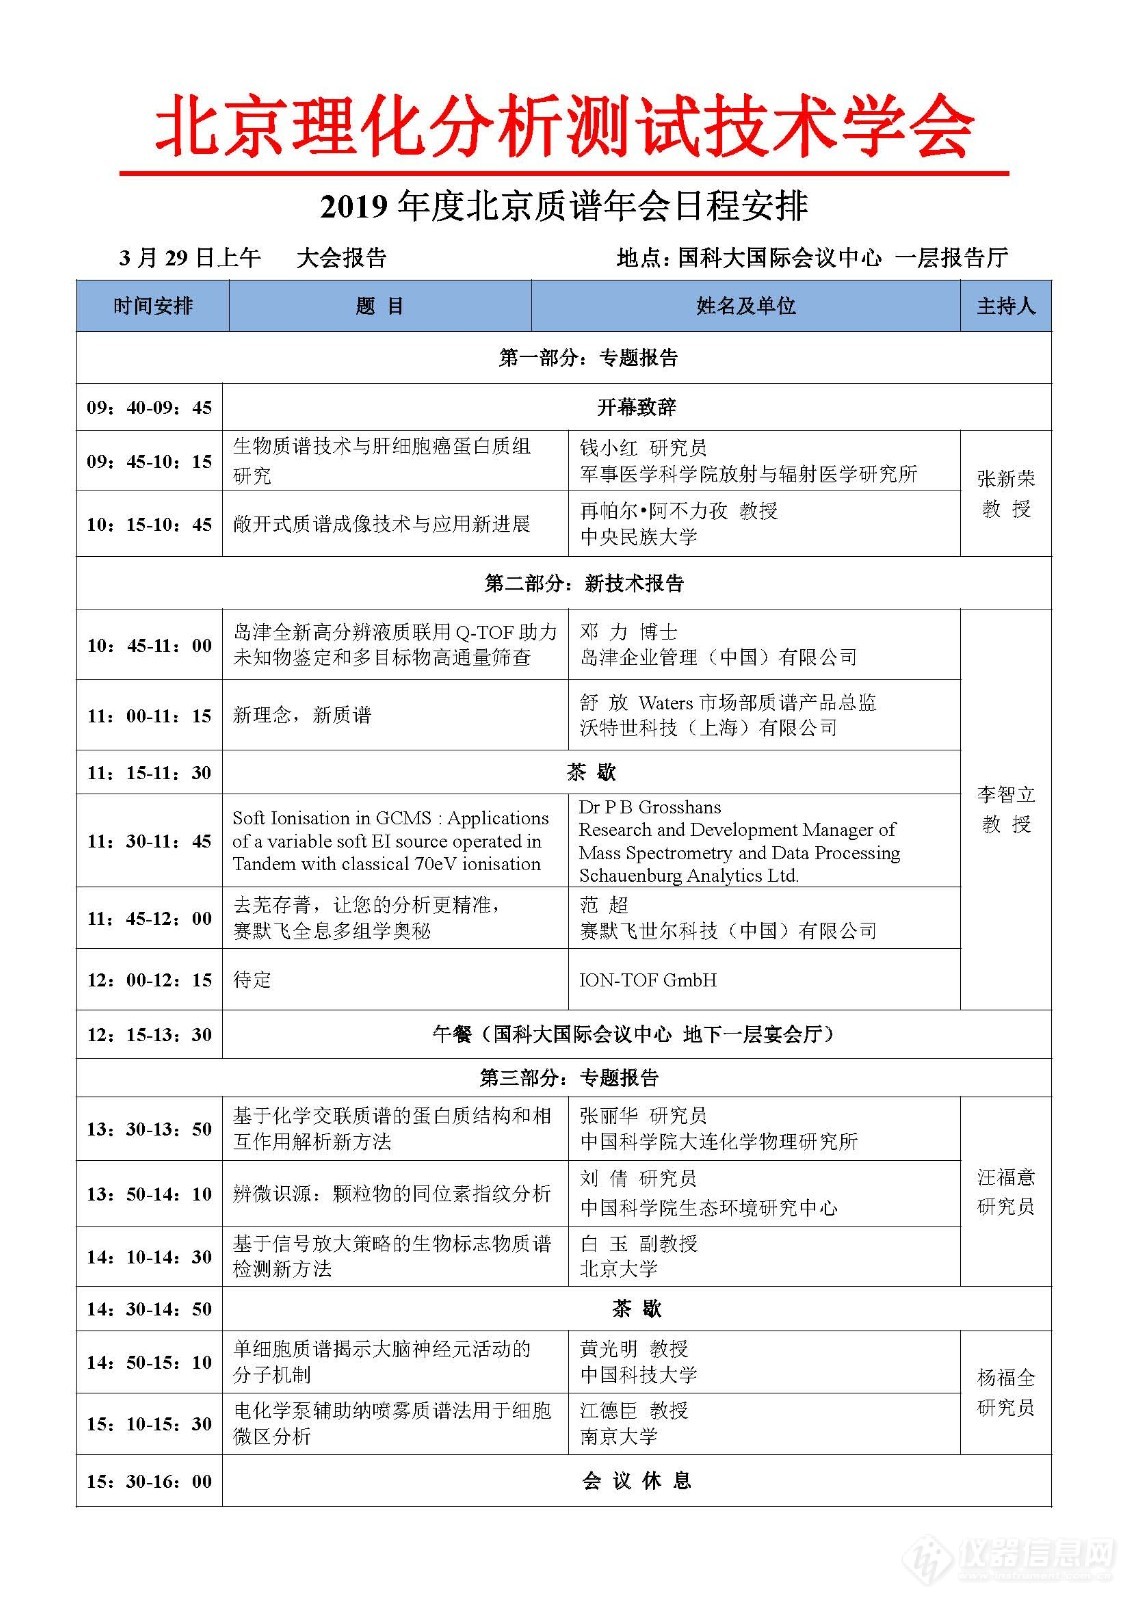 2019年度北京质谱年会二轮通知_页面_3.jpg